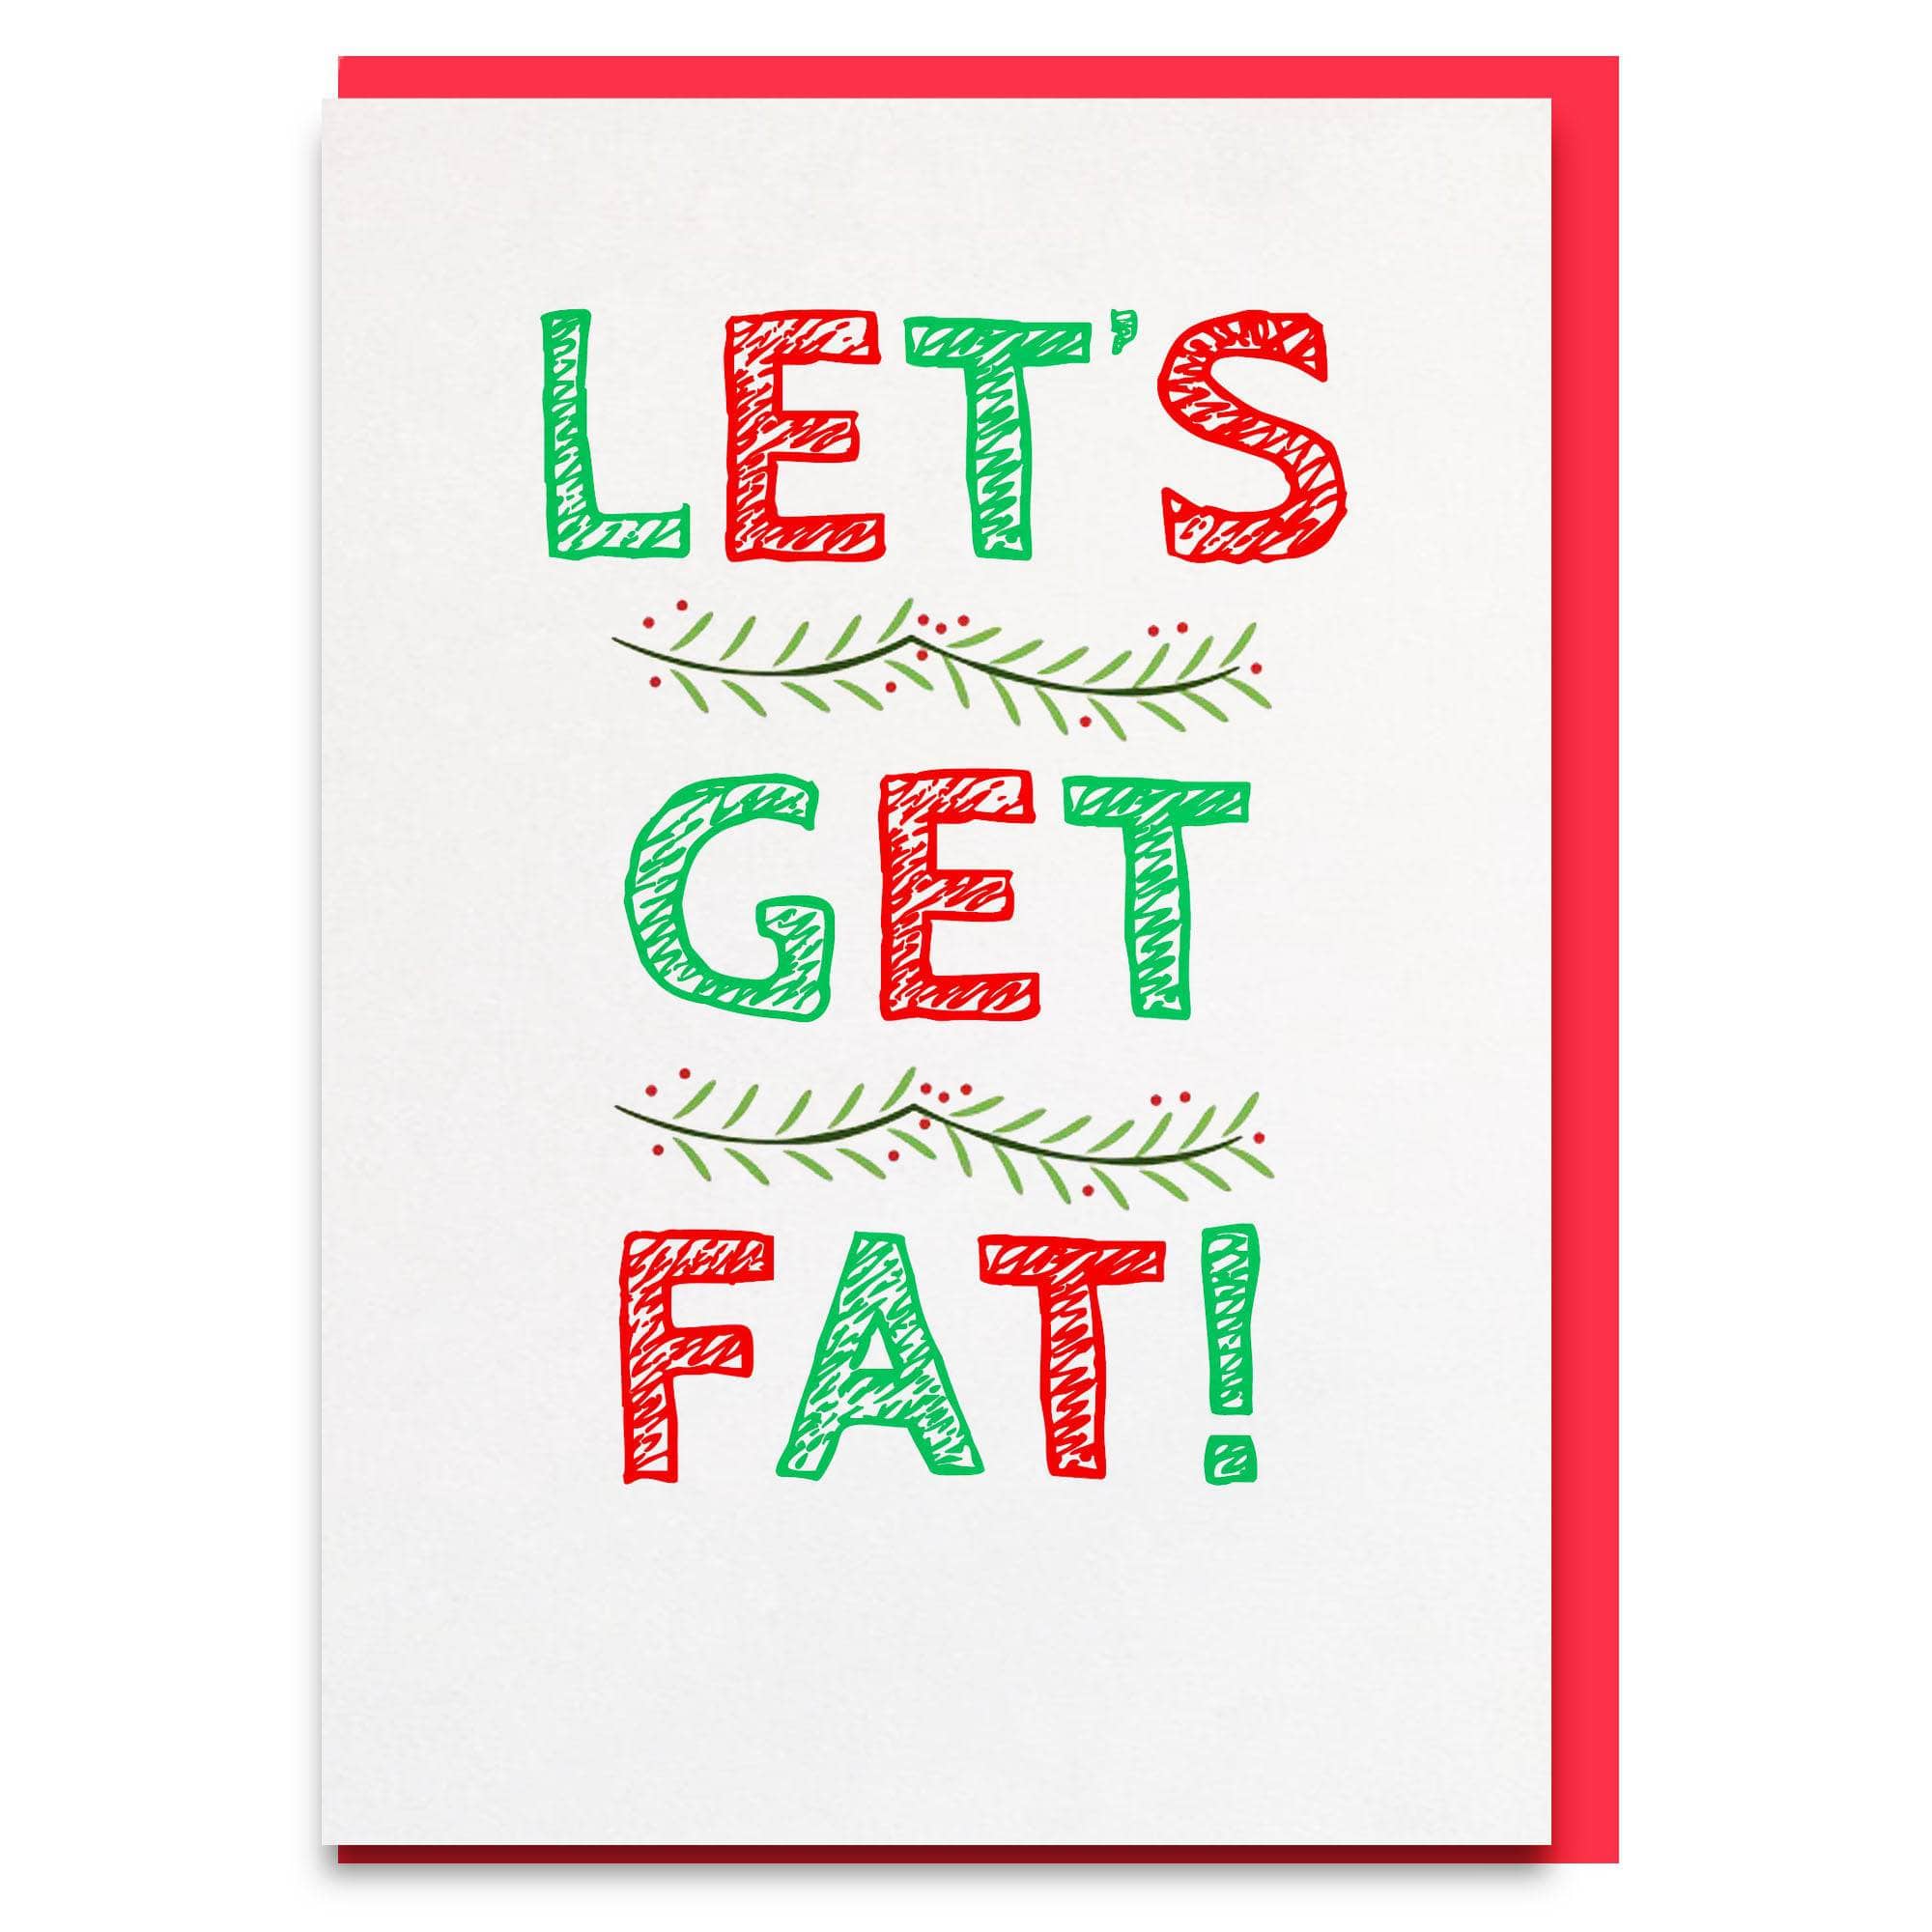 Get Fat!